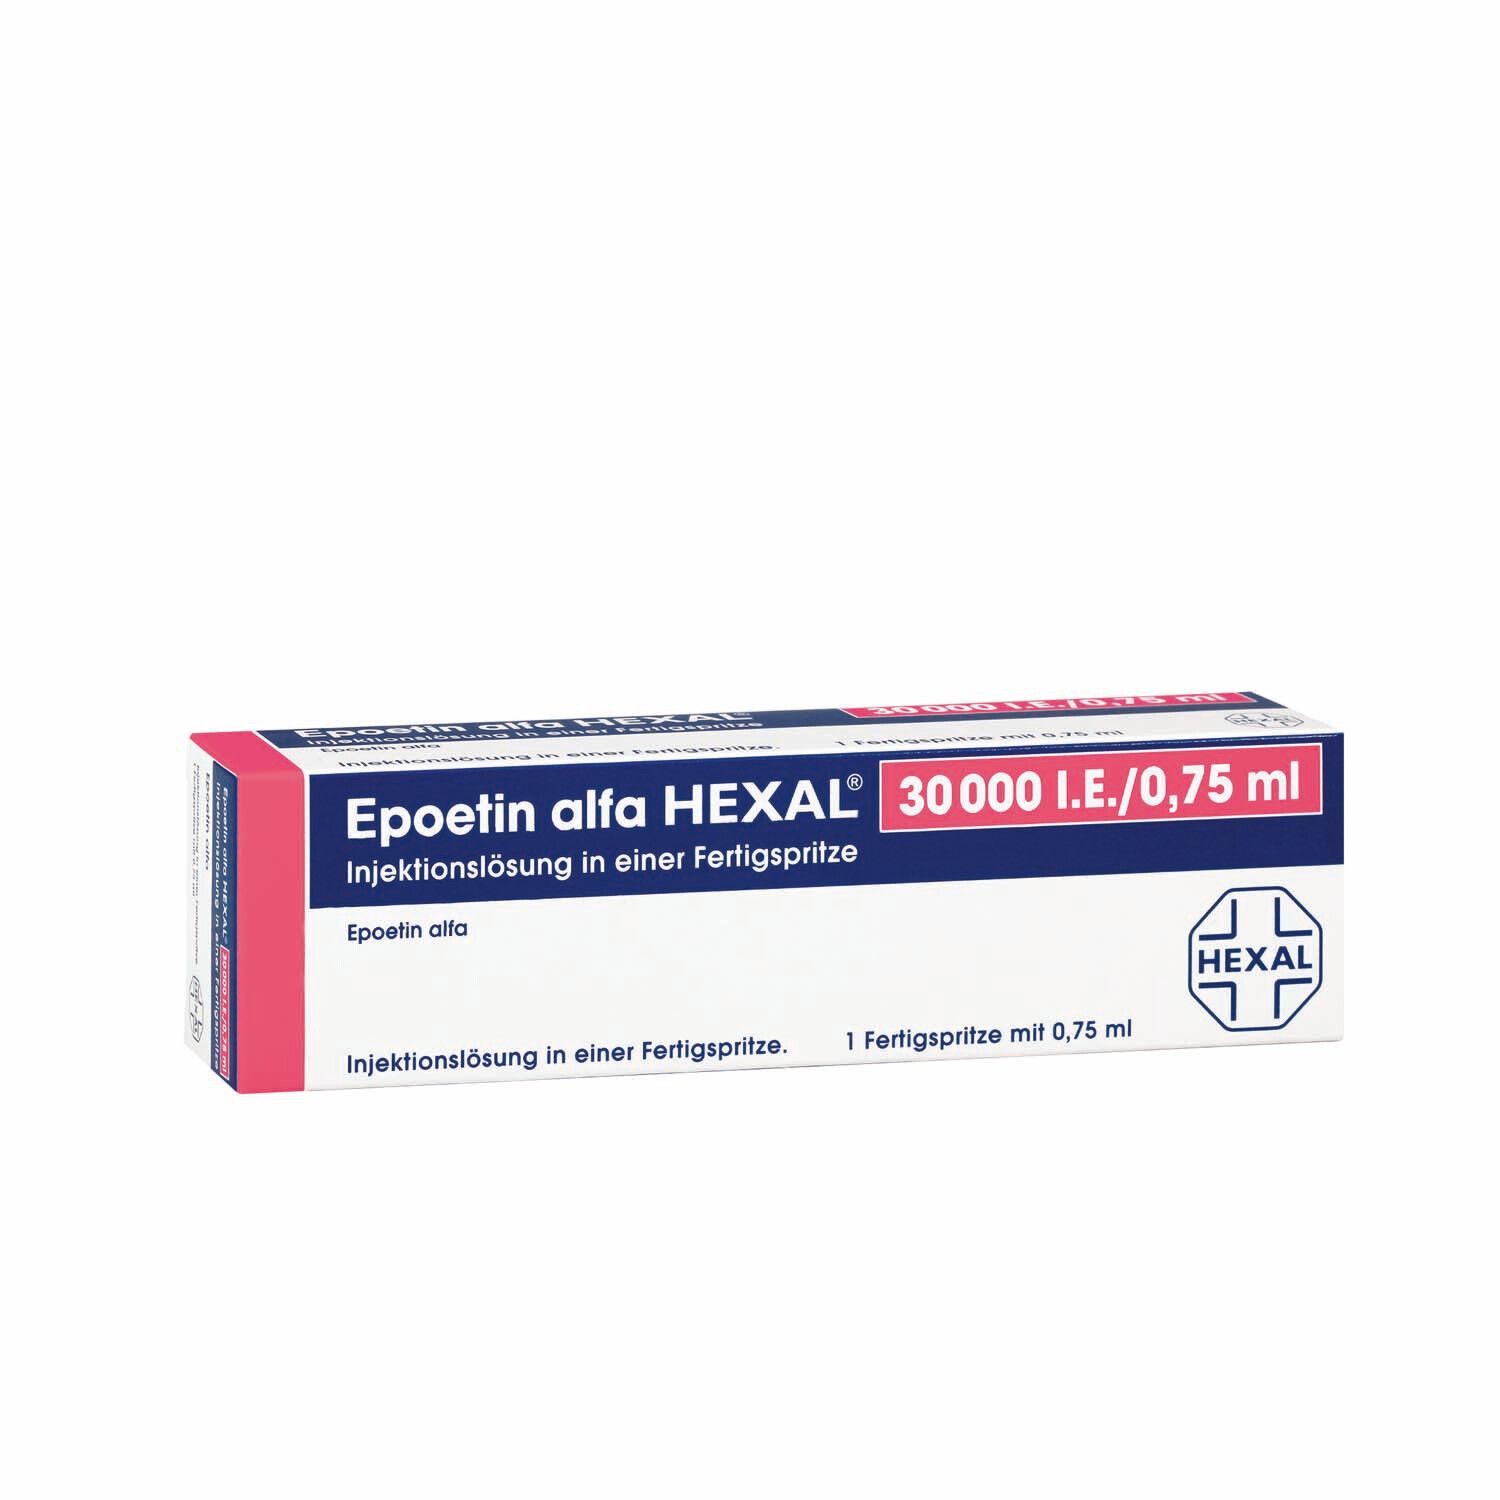 Epoetin alfa HEXAL® 30.000 I.E./0,75ml